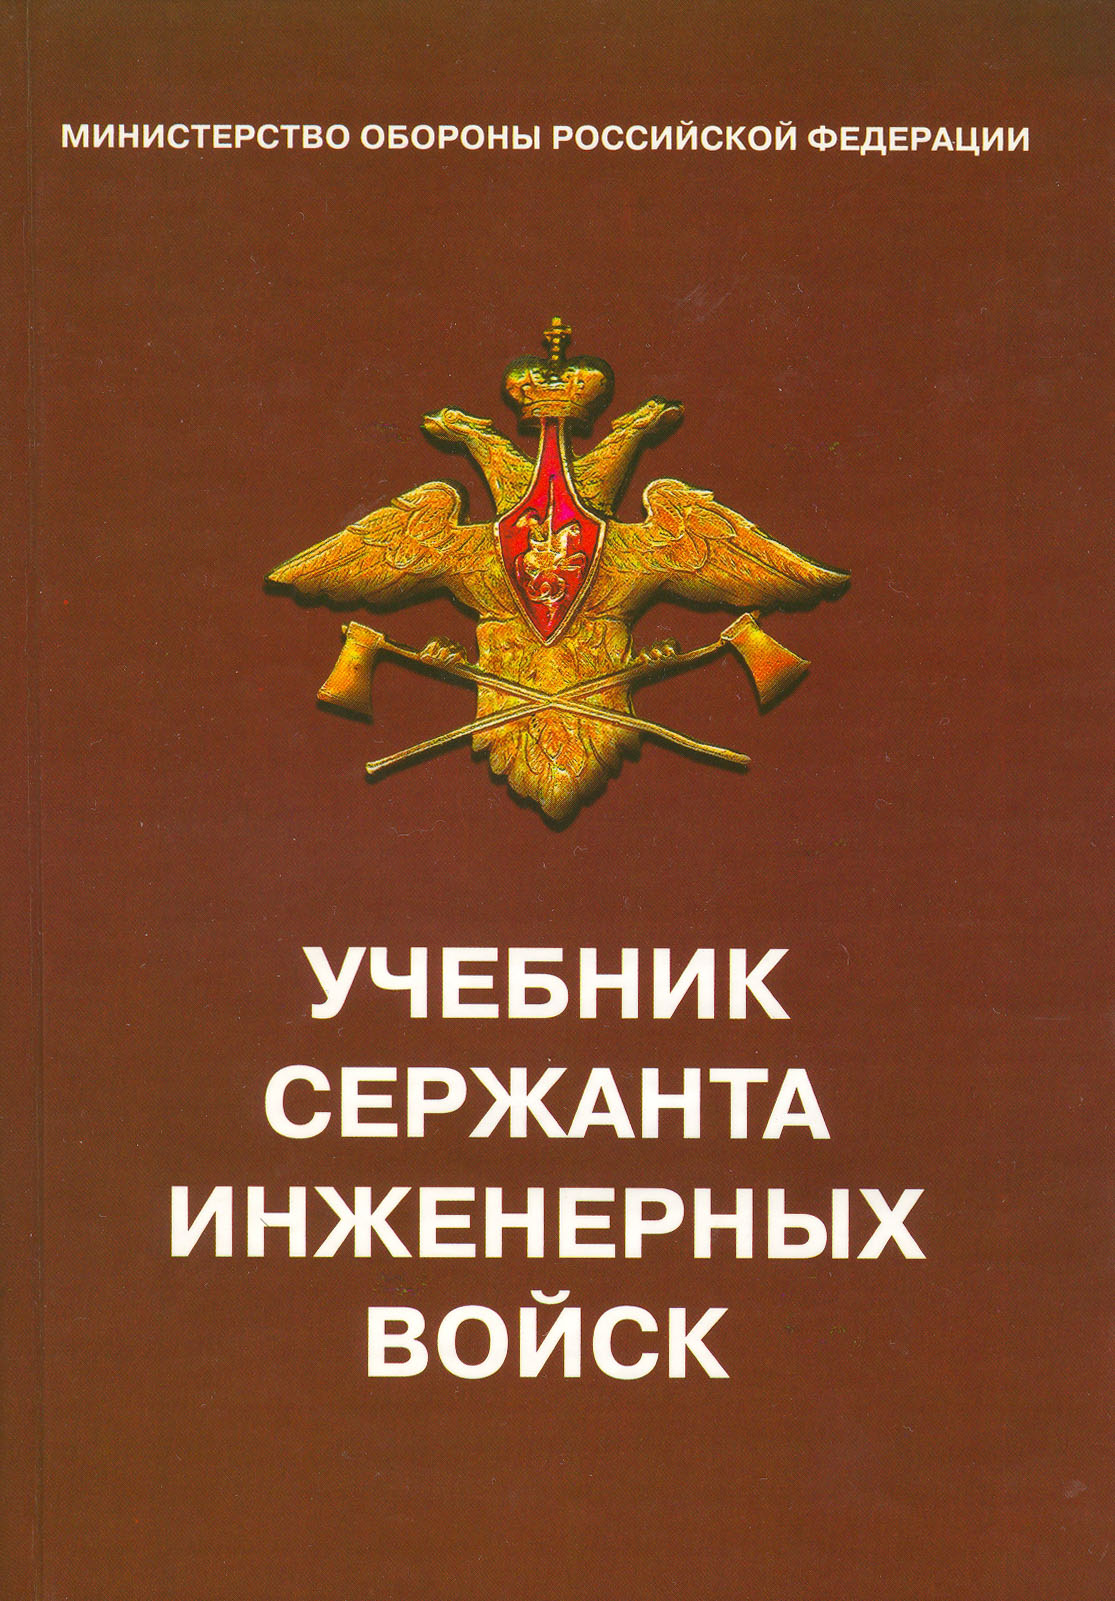 Учебник сержанта инженерных войск. 2004.doc